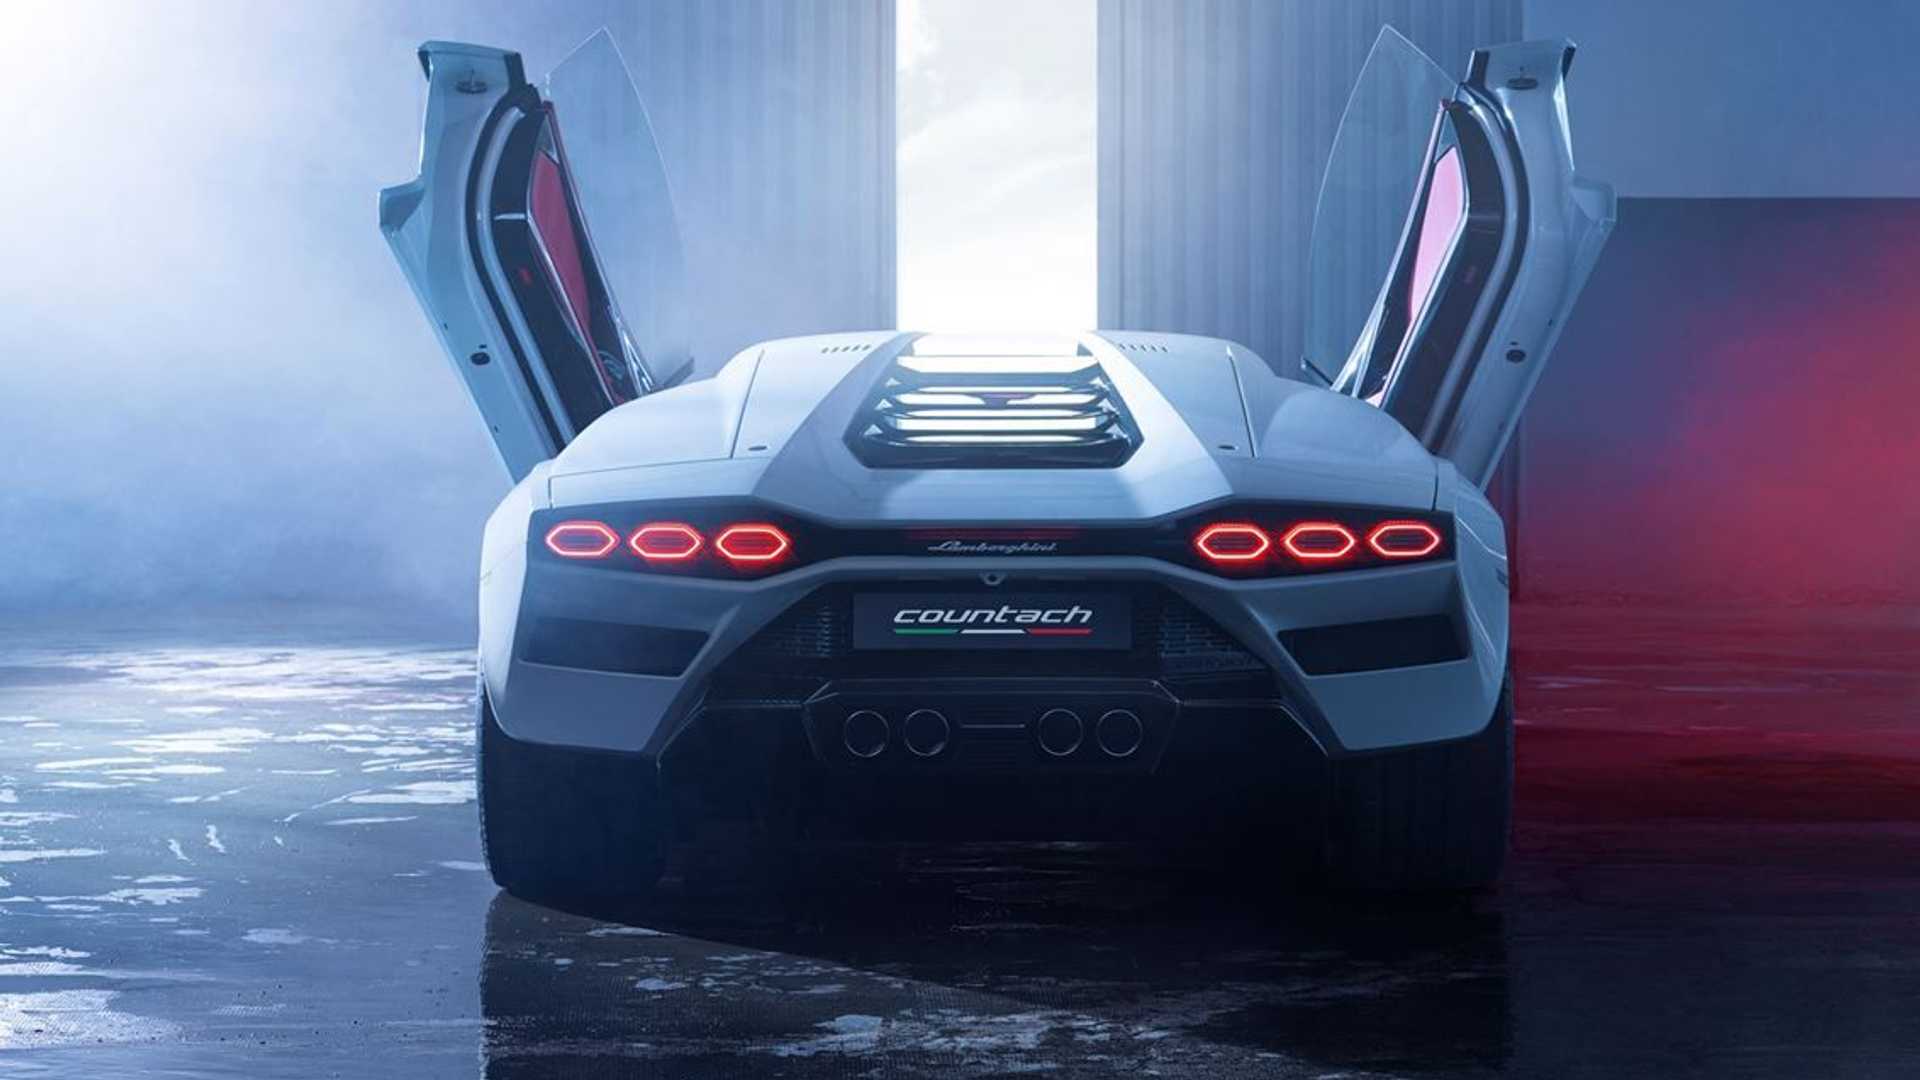  Lamborghini-ს ელექტრიფიკაცია 2023 წელს დაიწყება